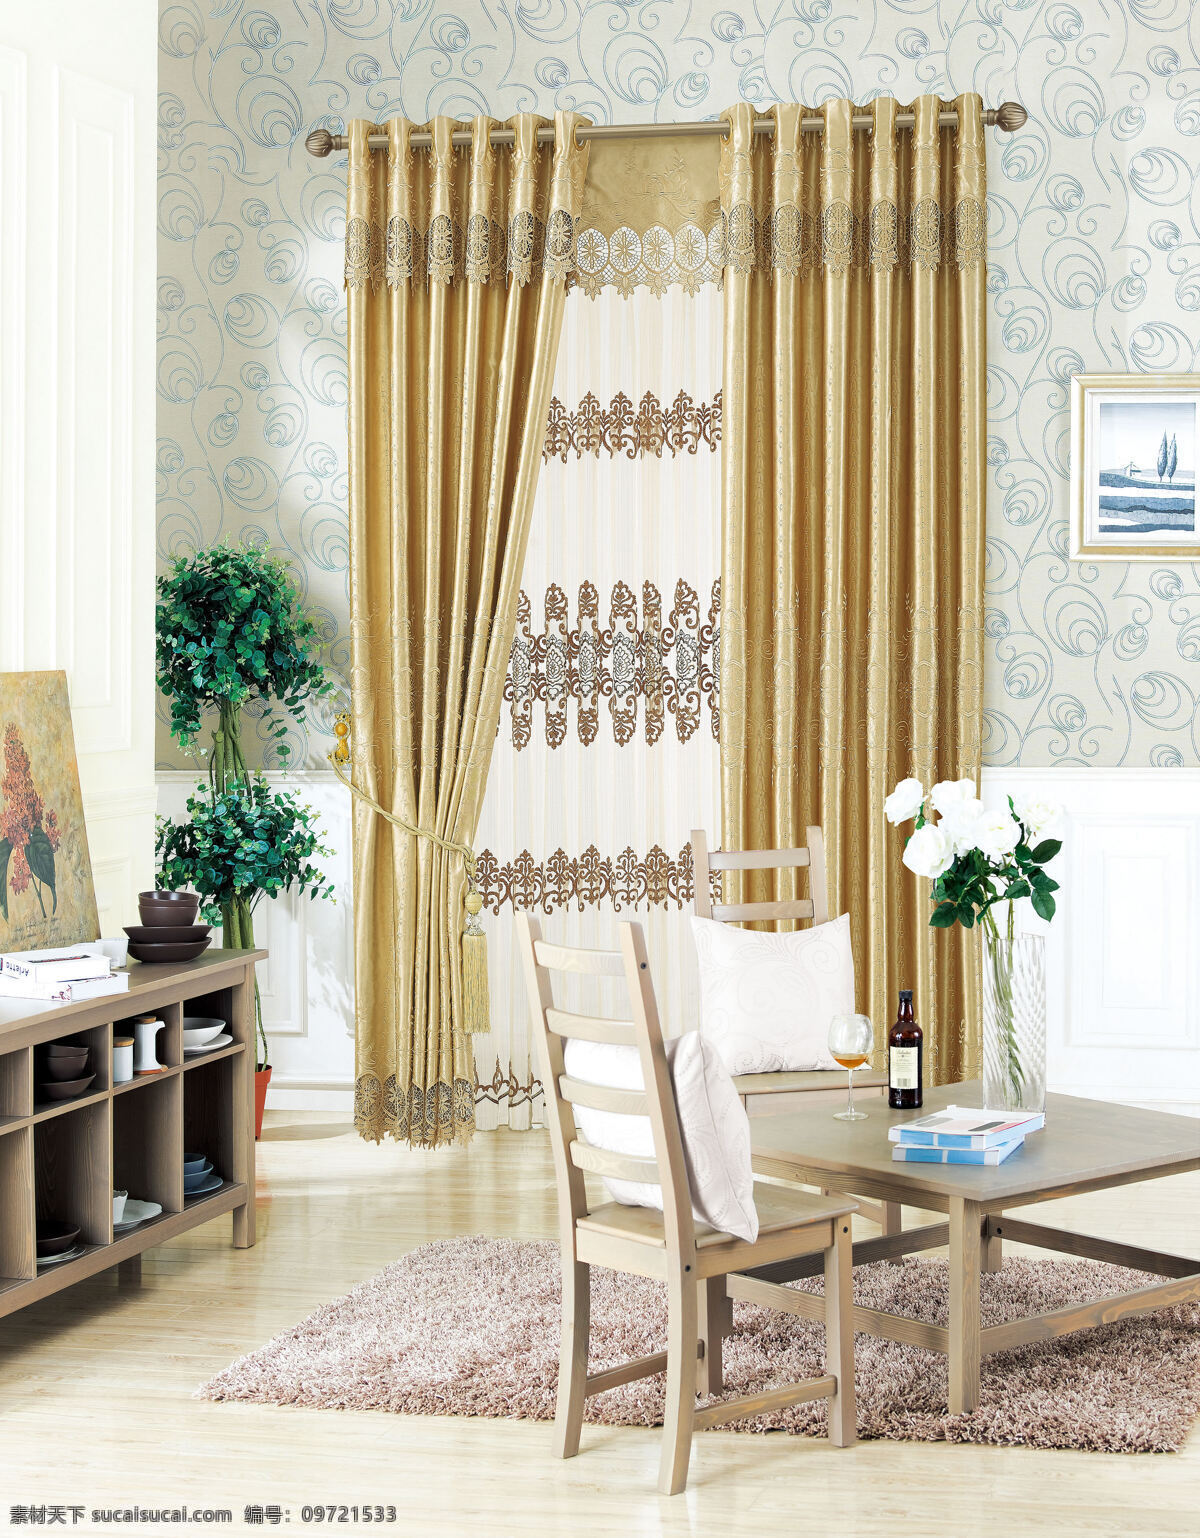 窗帘 欧式 中式 高档 绣花 客厅 遮光 成品窗帘 卧室 落地窗 室内摄影 建筑园林